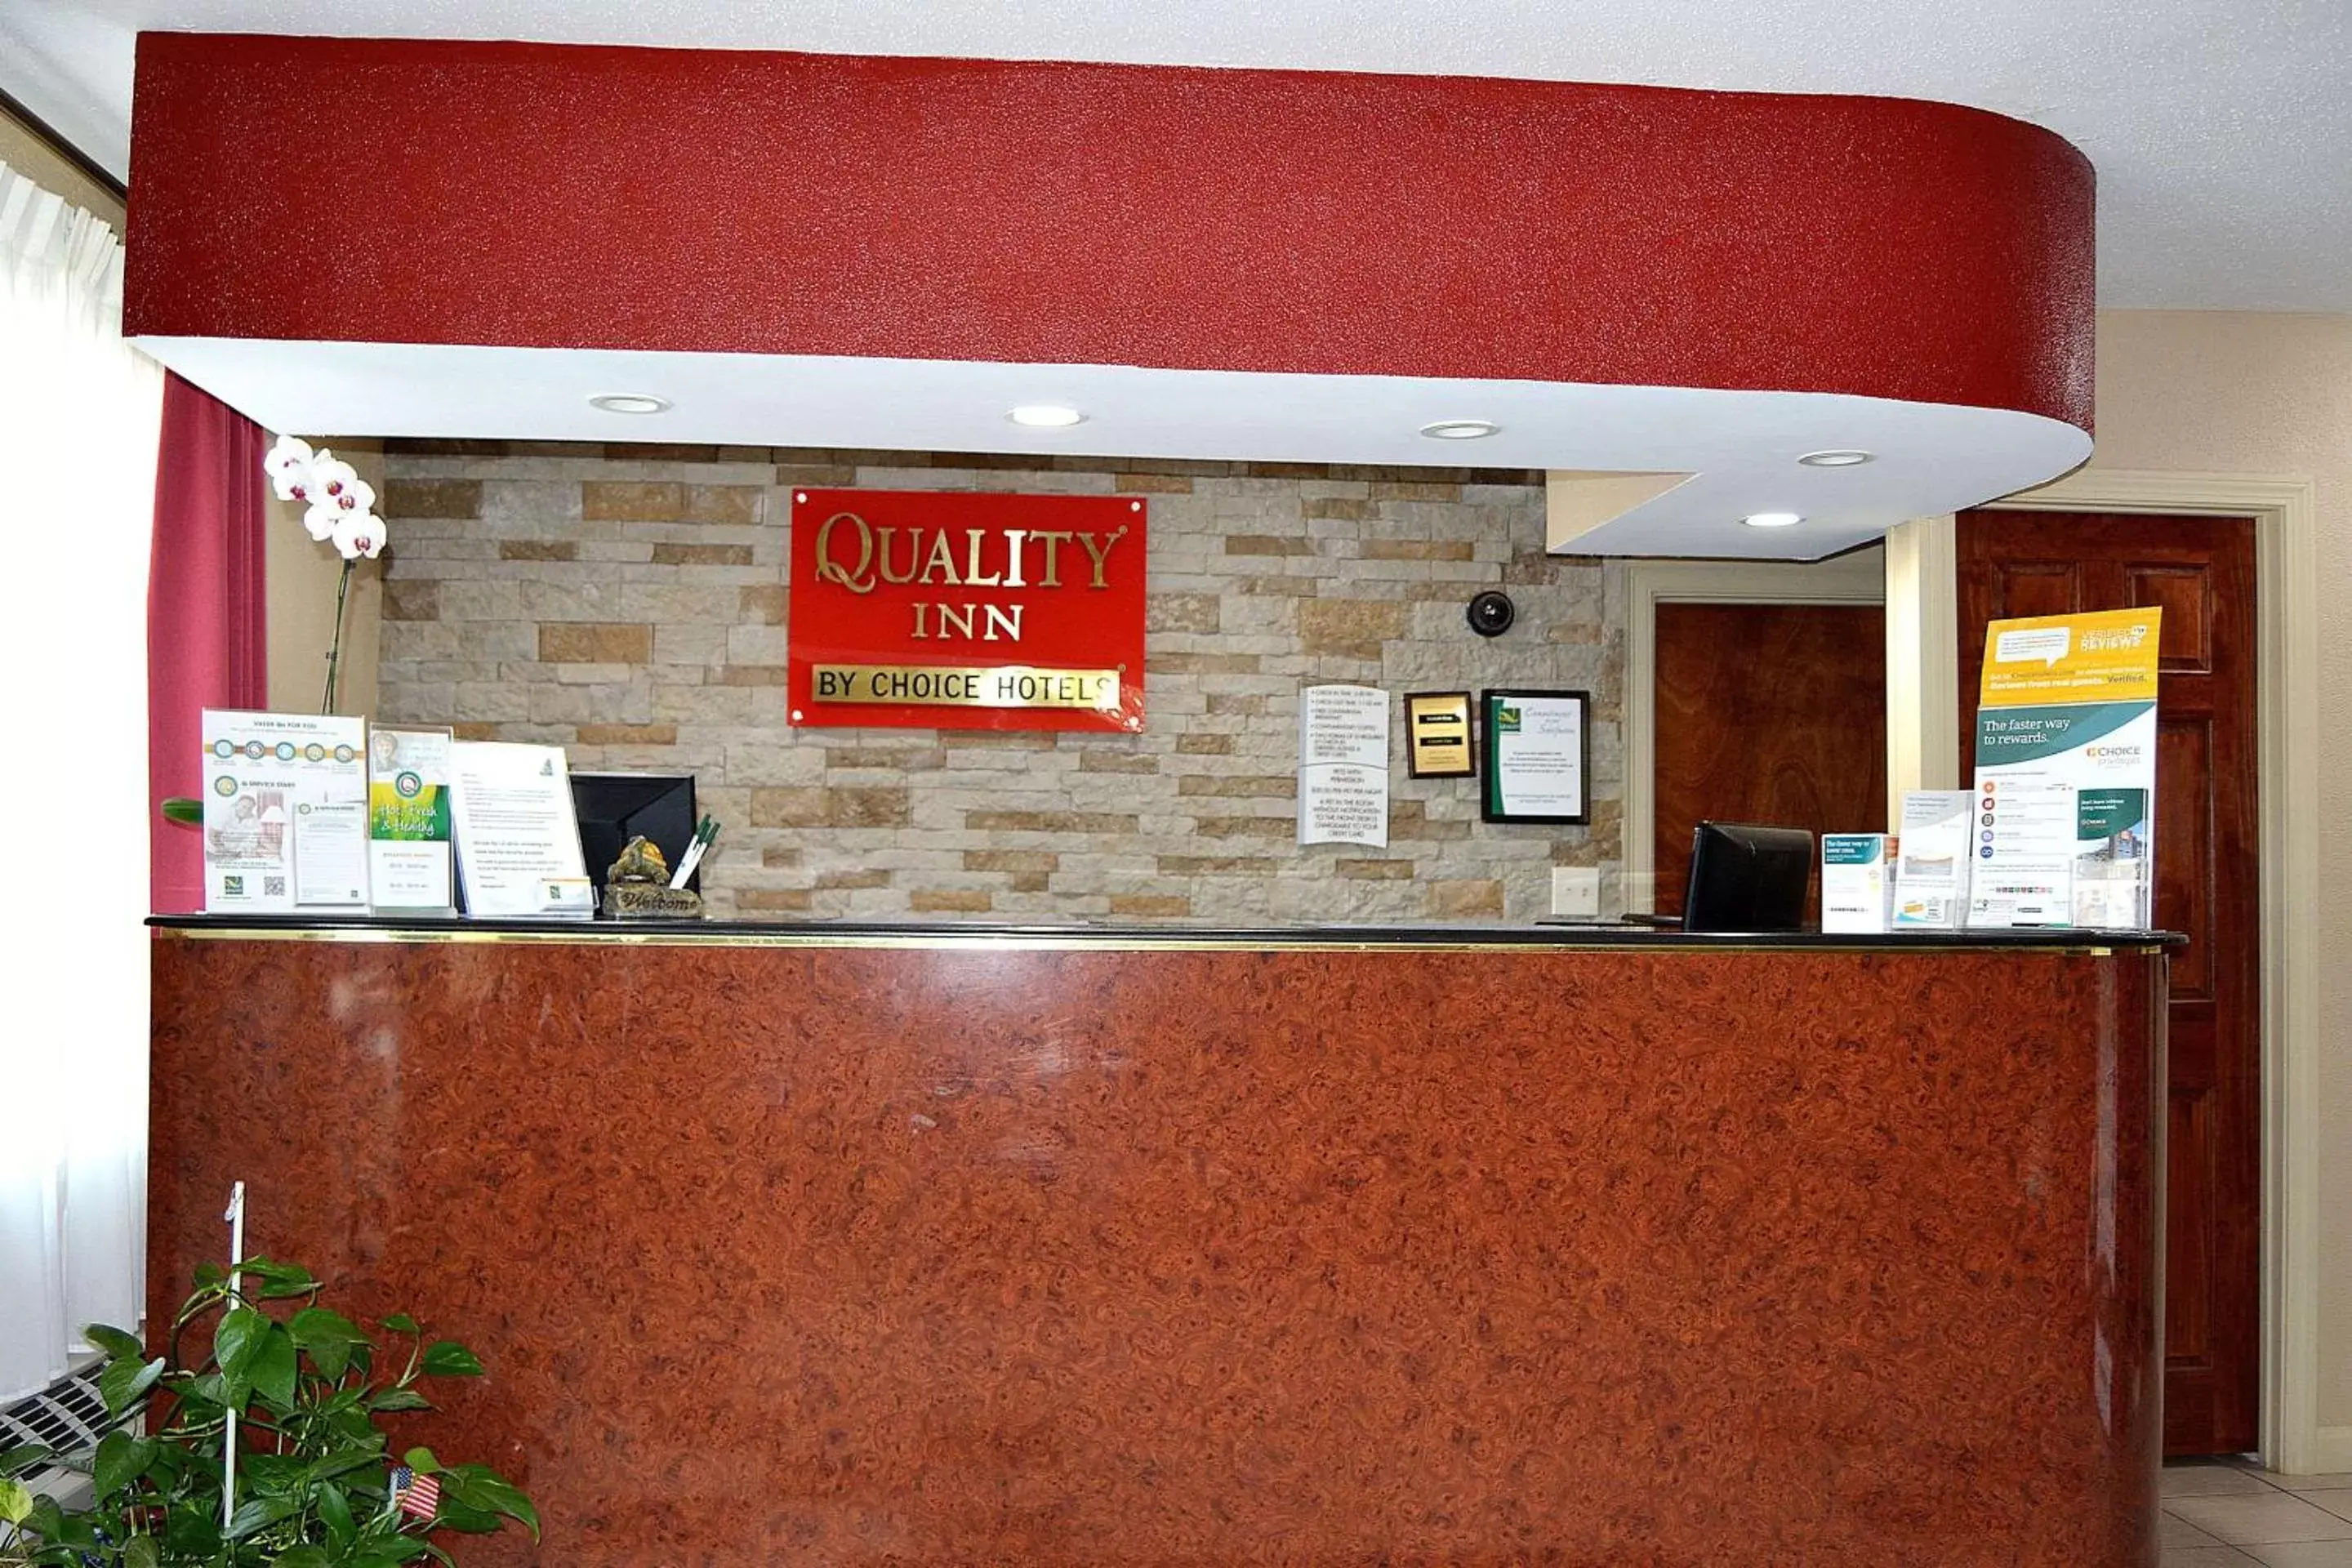 Lobby or reception, Lobby/Reception in Quality Inn Raynham - Taunton